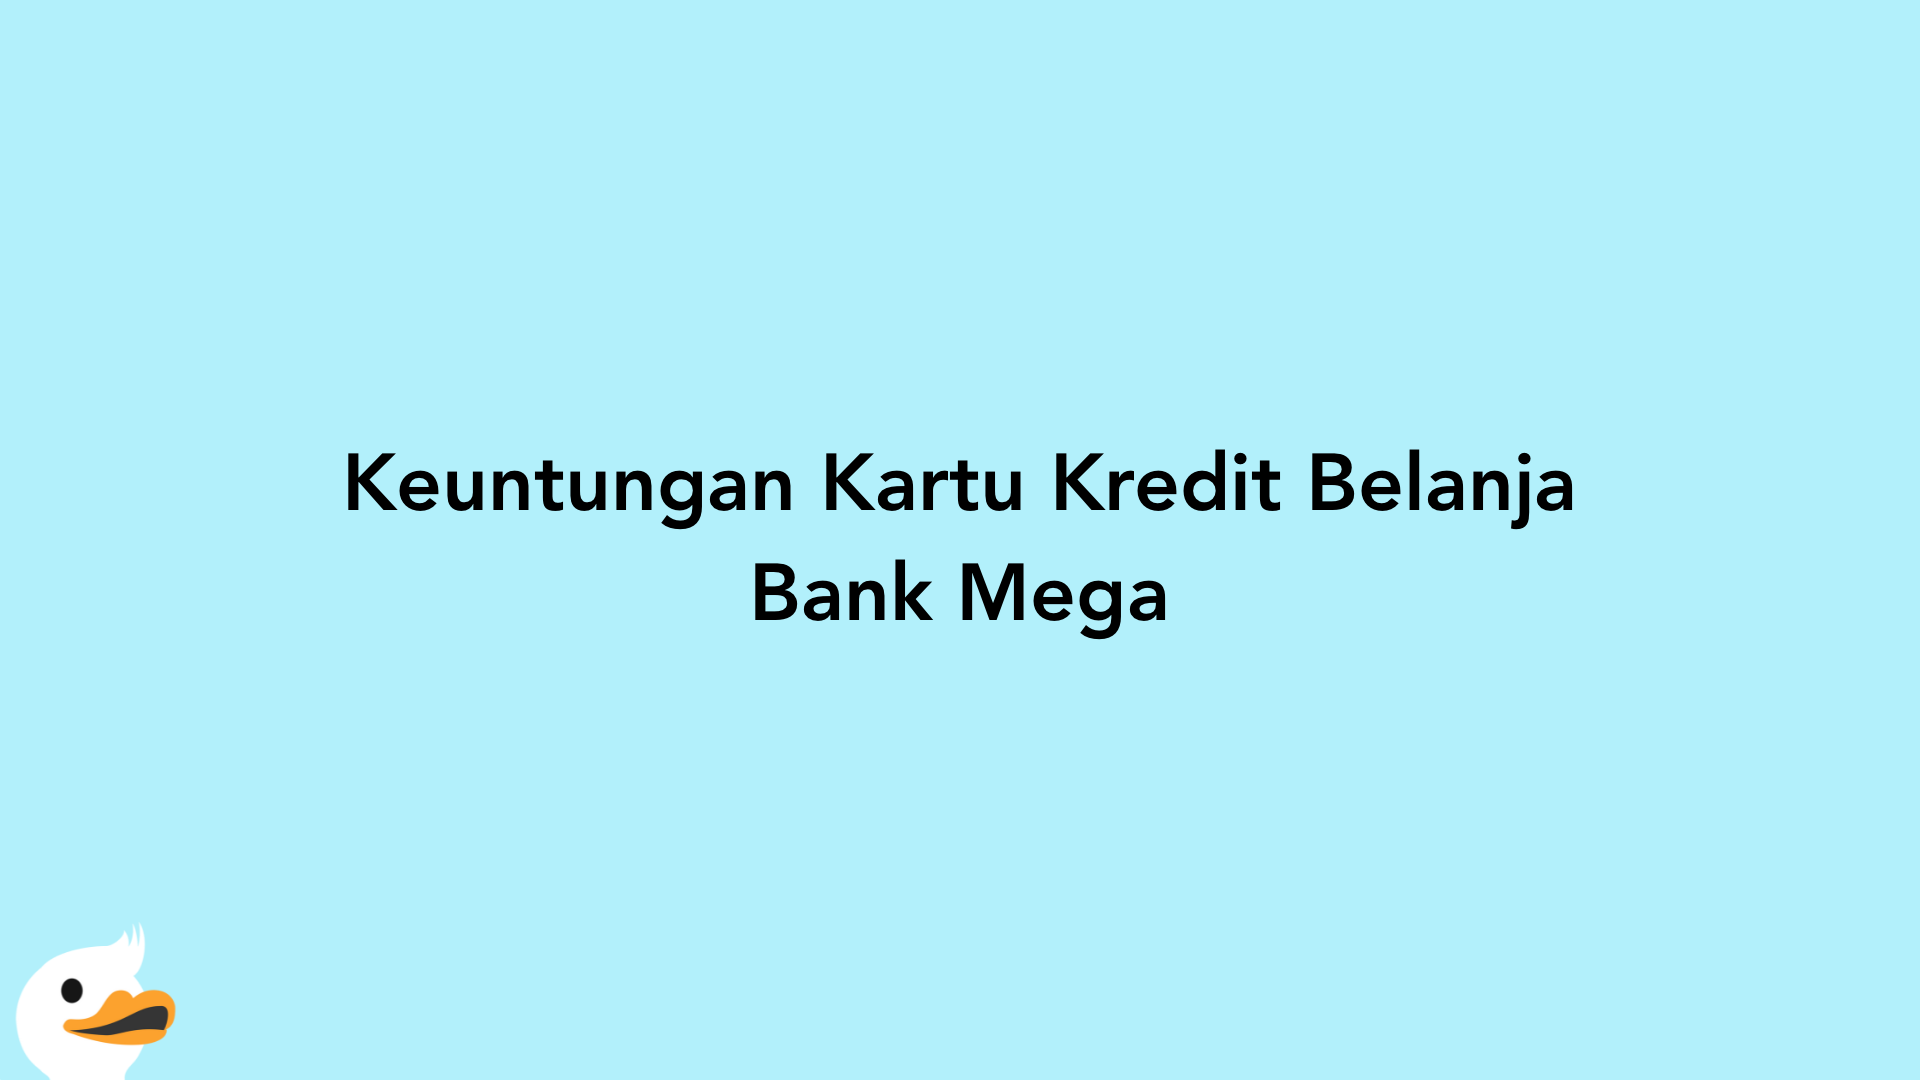 Keuntungan Kartu Kredit Belanja Bank Mega